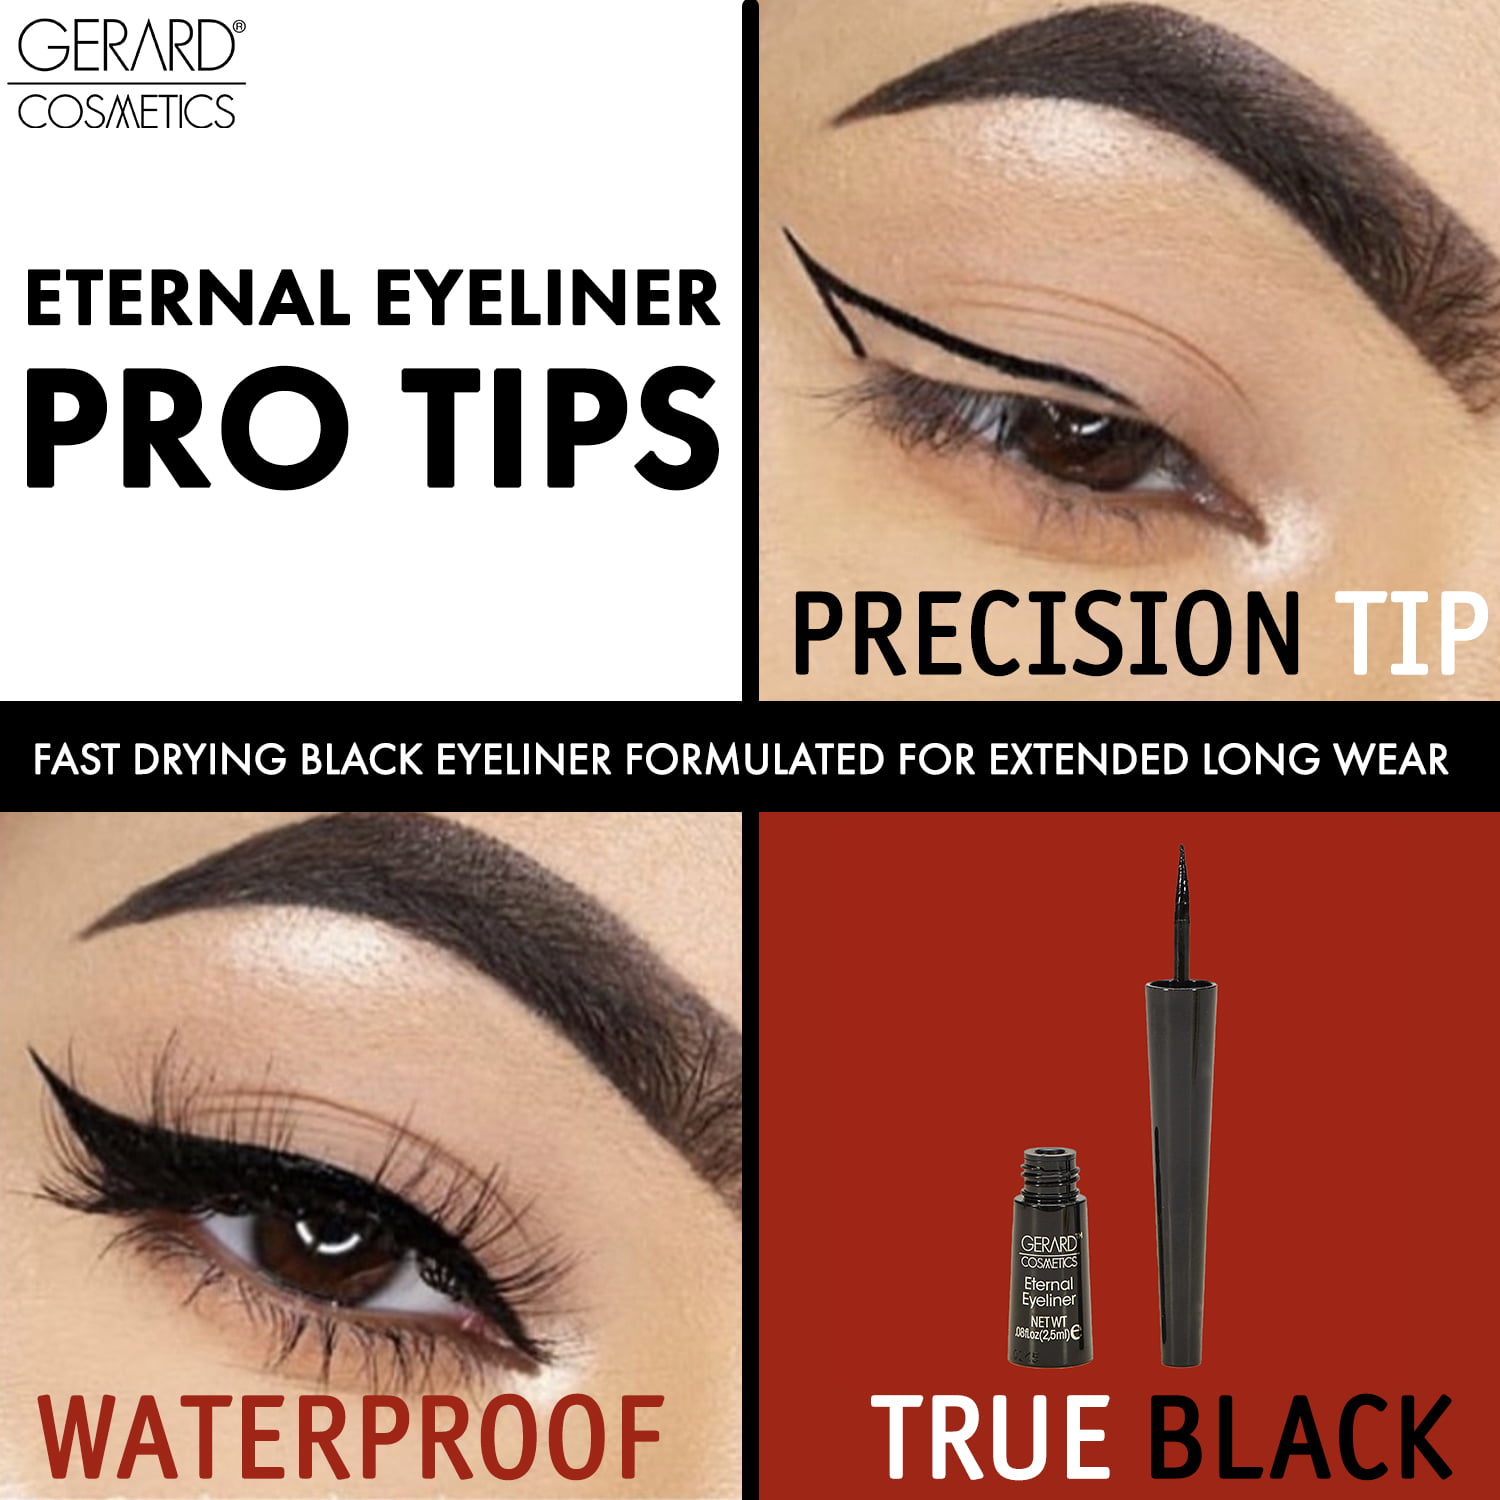 Gerard Cosmetics Eternal Eyeliner, Ultra Black, Waterproof Liquid Eye Liner